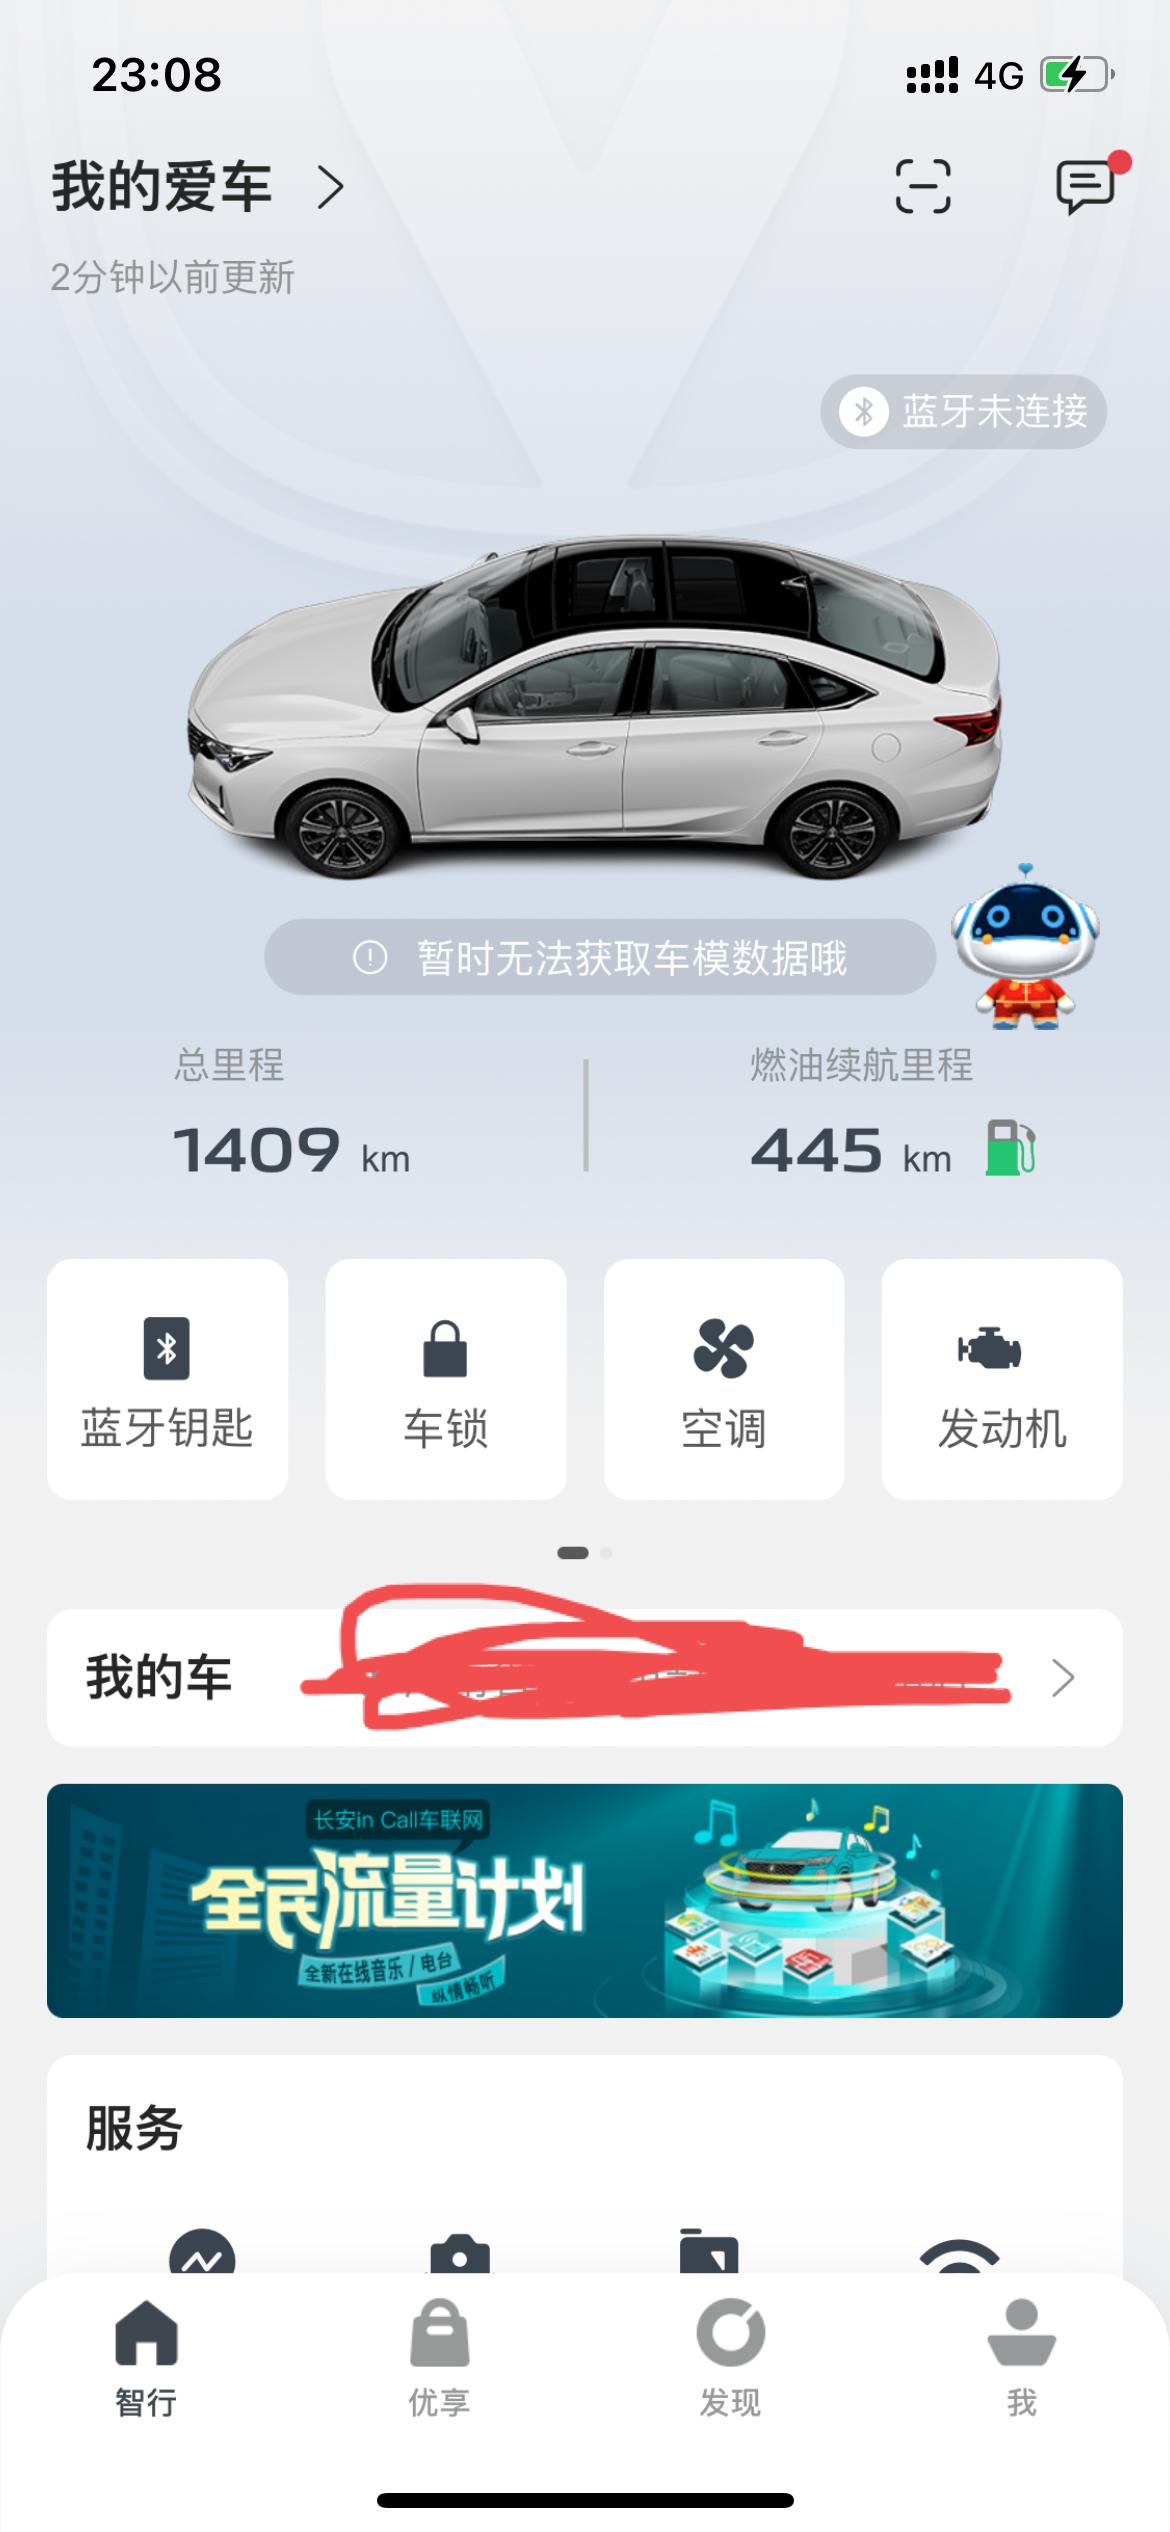 长安锐程CC 手机app显示无法获取车模数据什么意思，刚开始没有啊